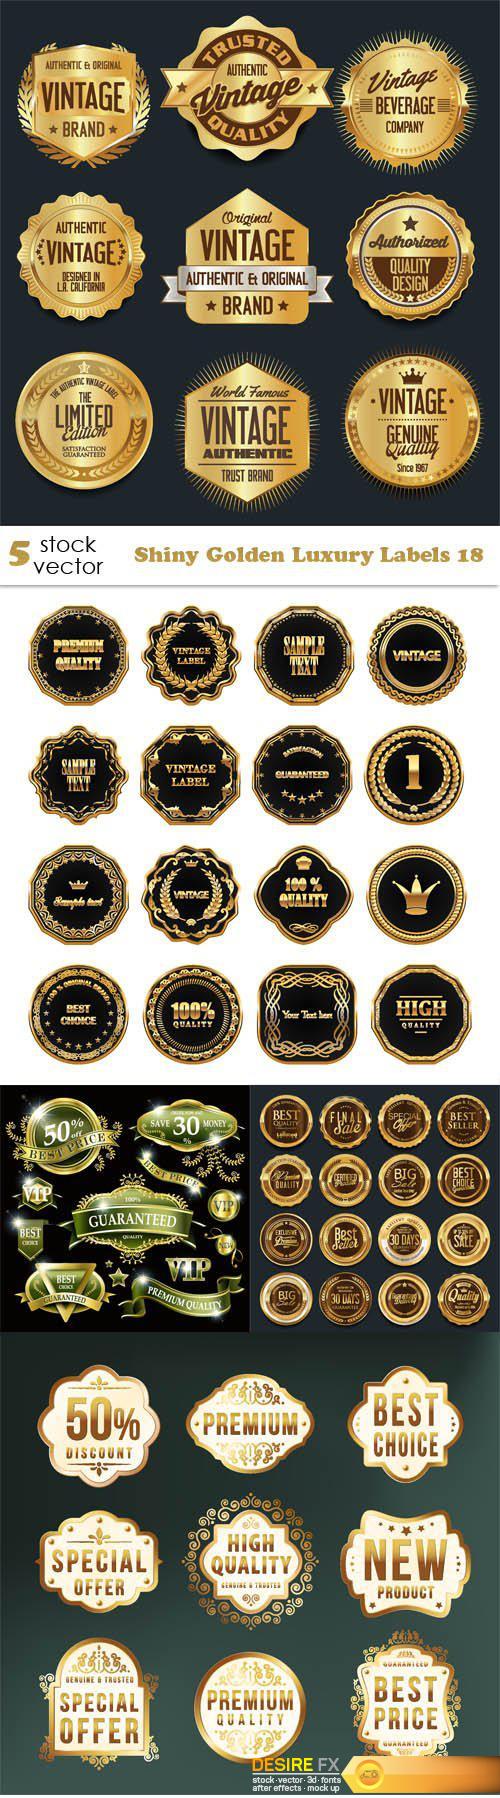 Vectors - Shiny Golden Luxury Labels 18